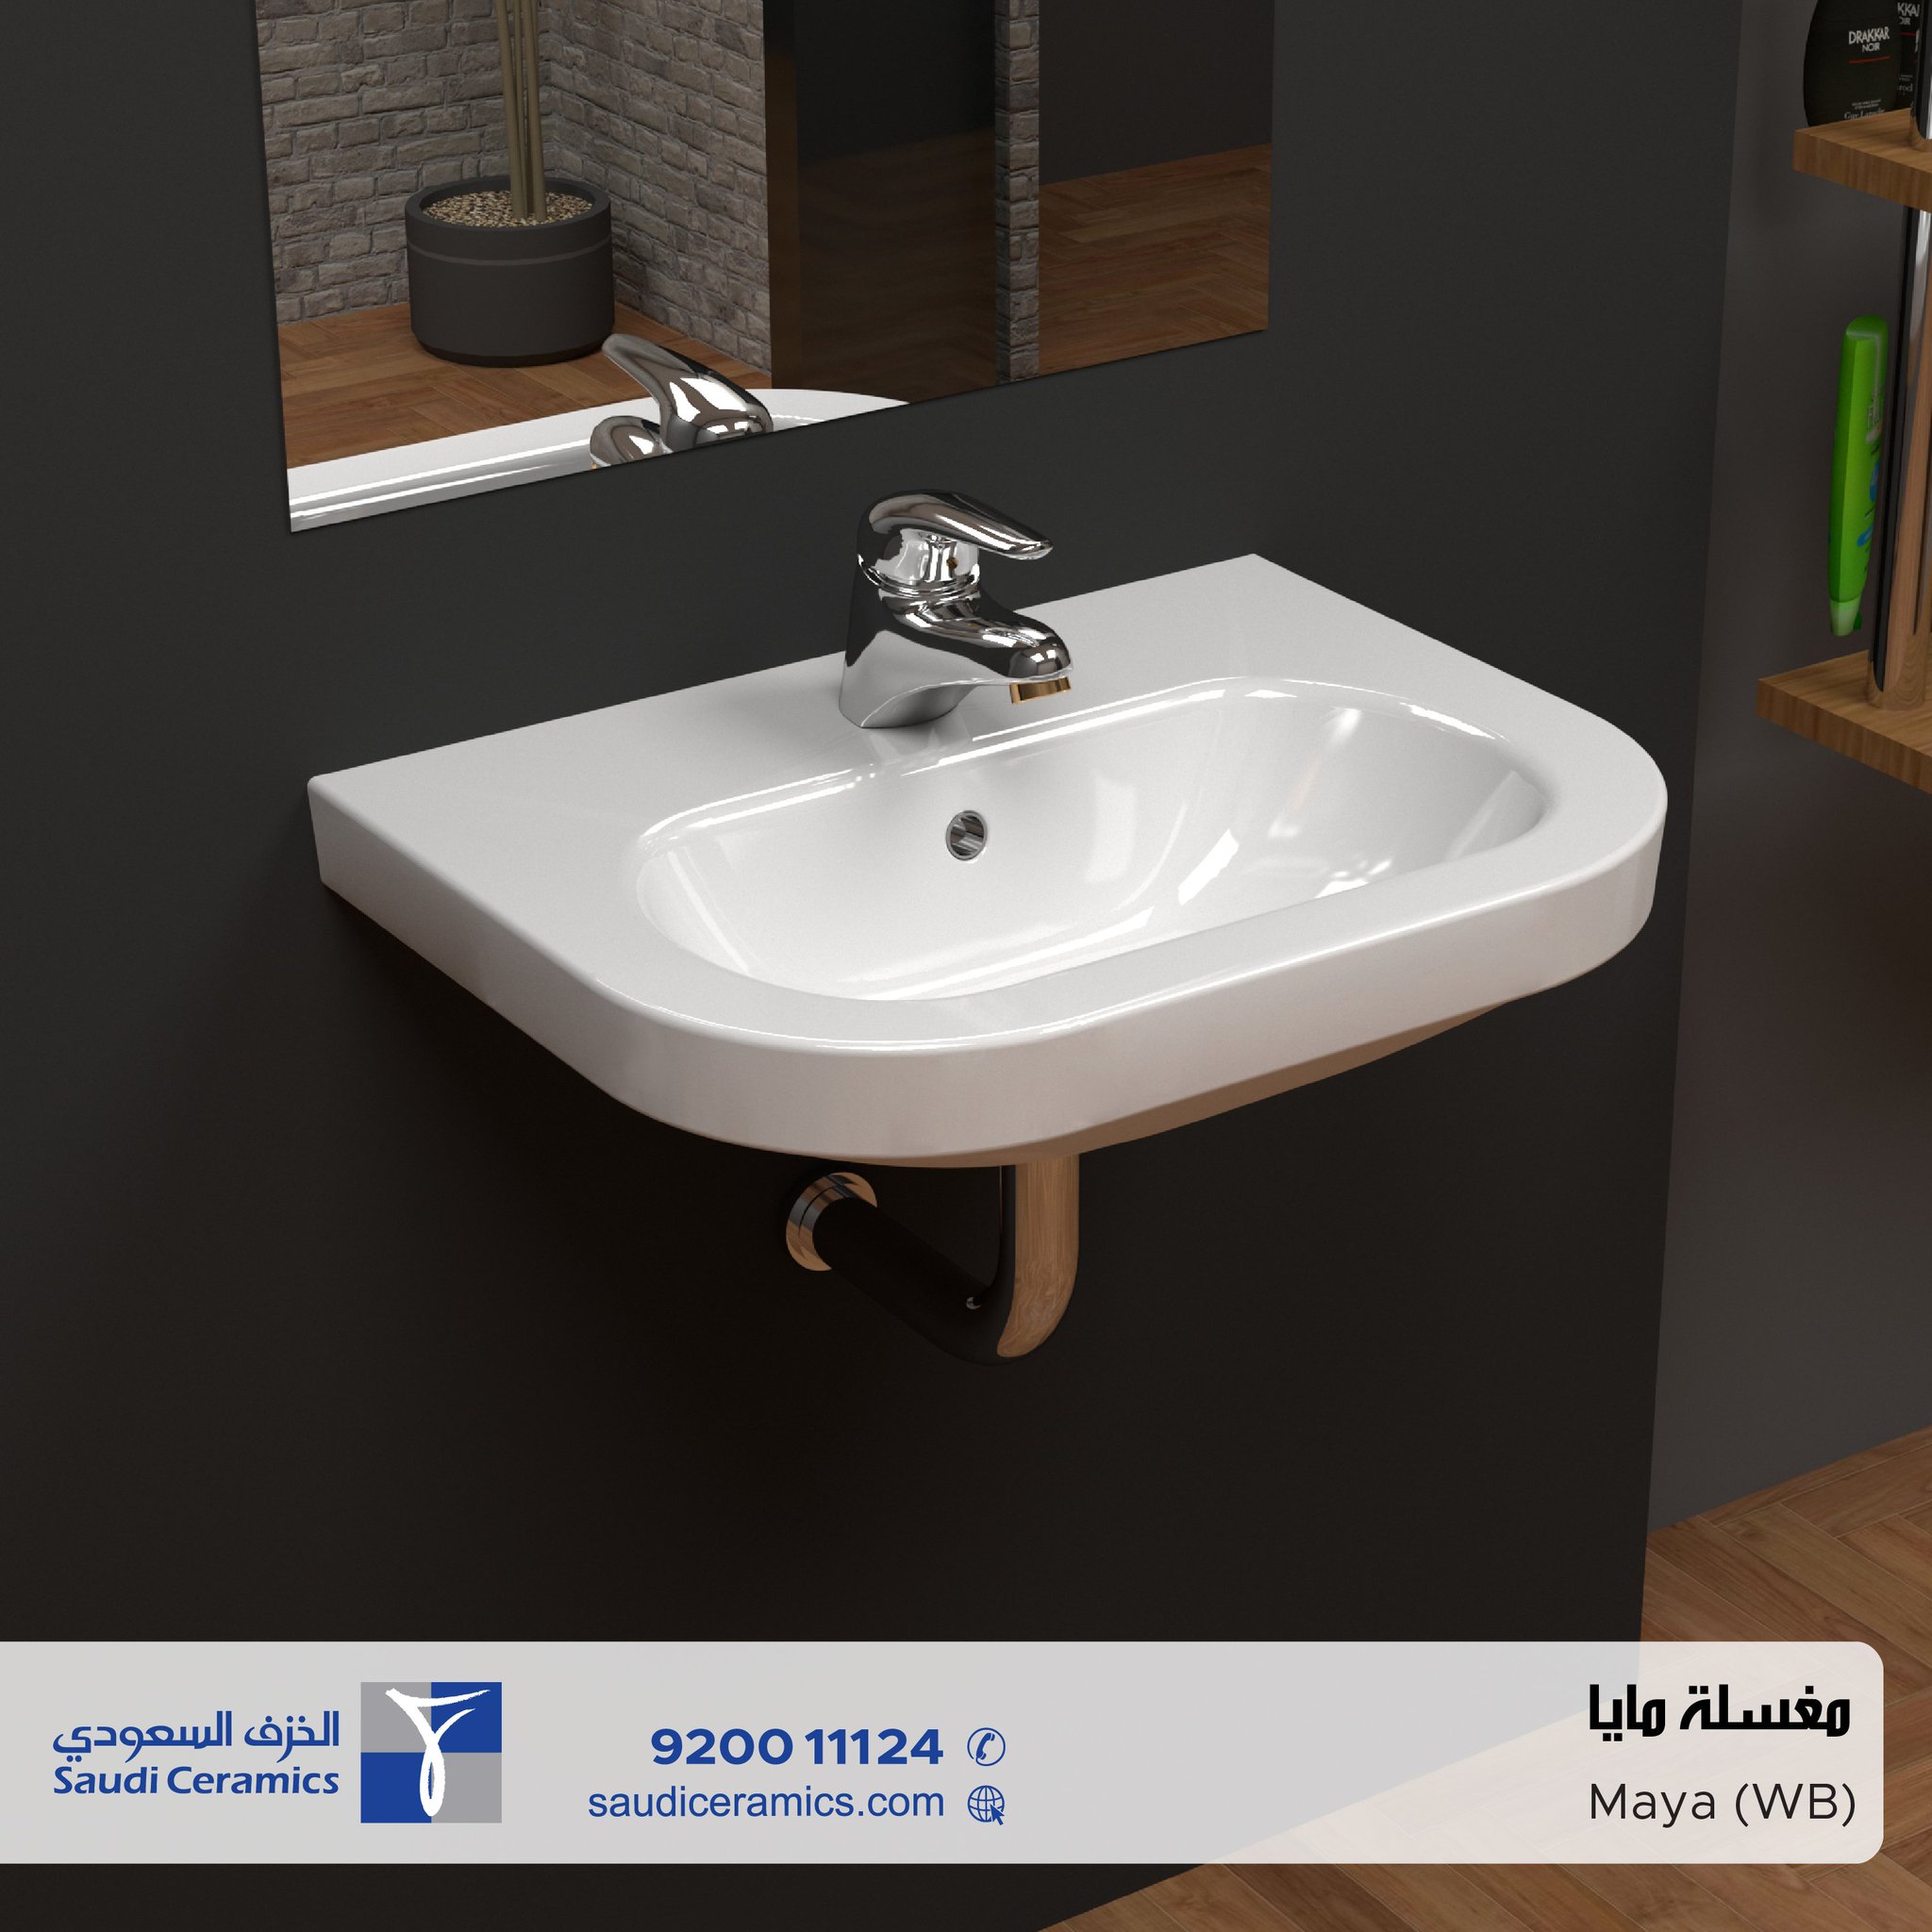 الخزف السعودي أحواض Twitteren Saudi Ceramic متوفرة في نماذج مختلفة لتناسب احتياجاتك ومتوفرة في موديلات الأرضيات والمعلقة